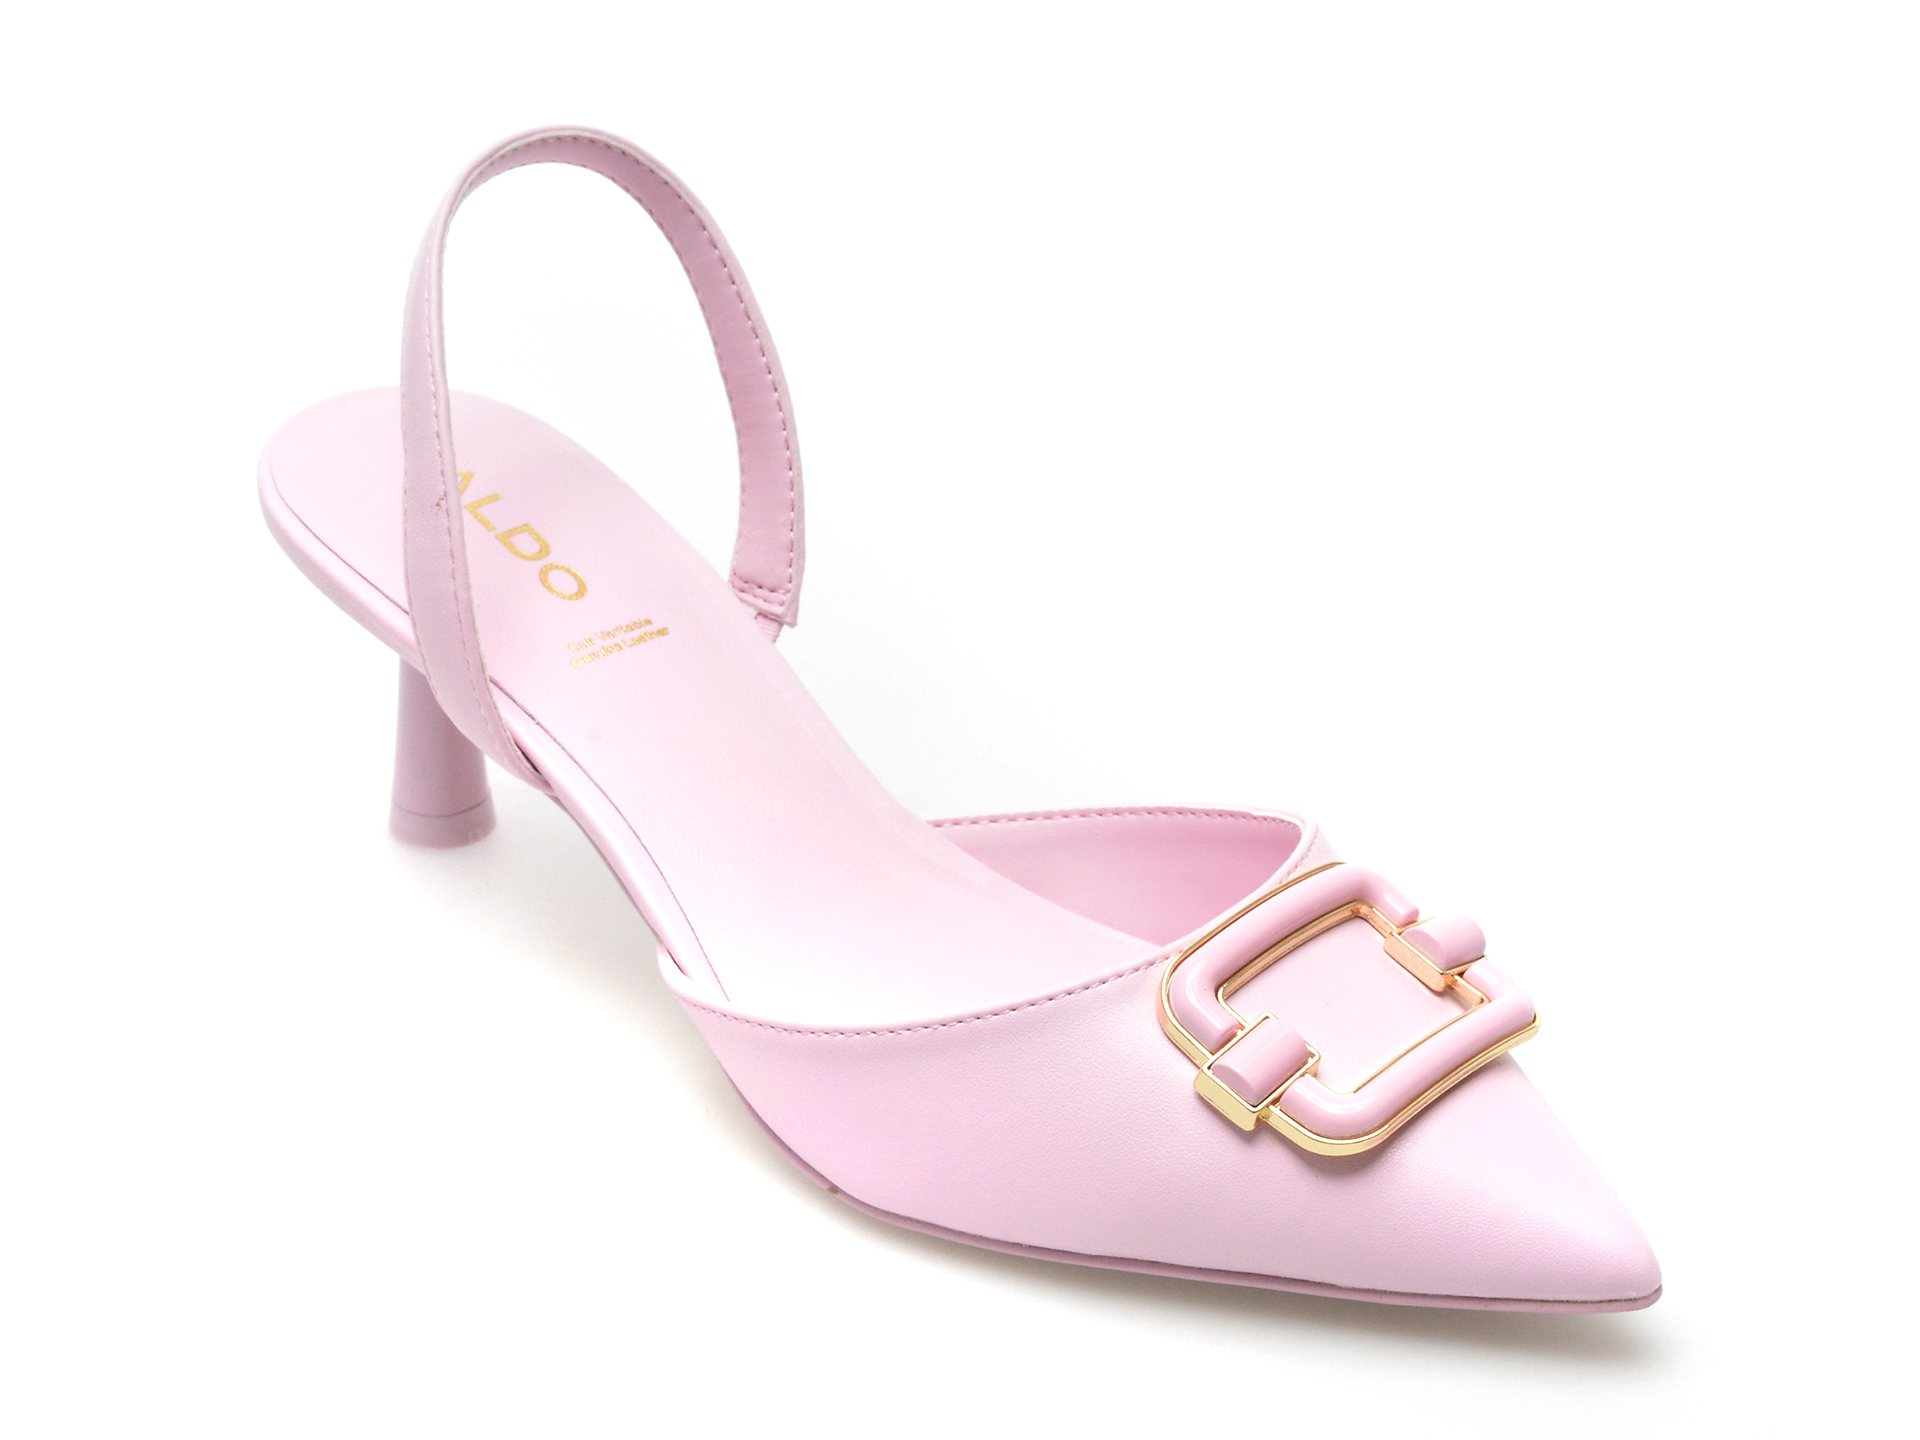 Pantofi ALDO roz, HUELVA650, din piele ecologica femei 2023-03-21